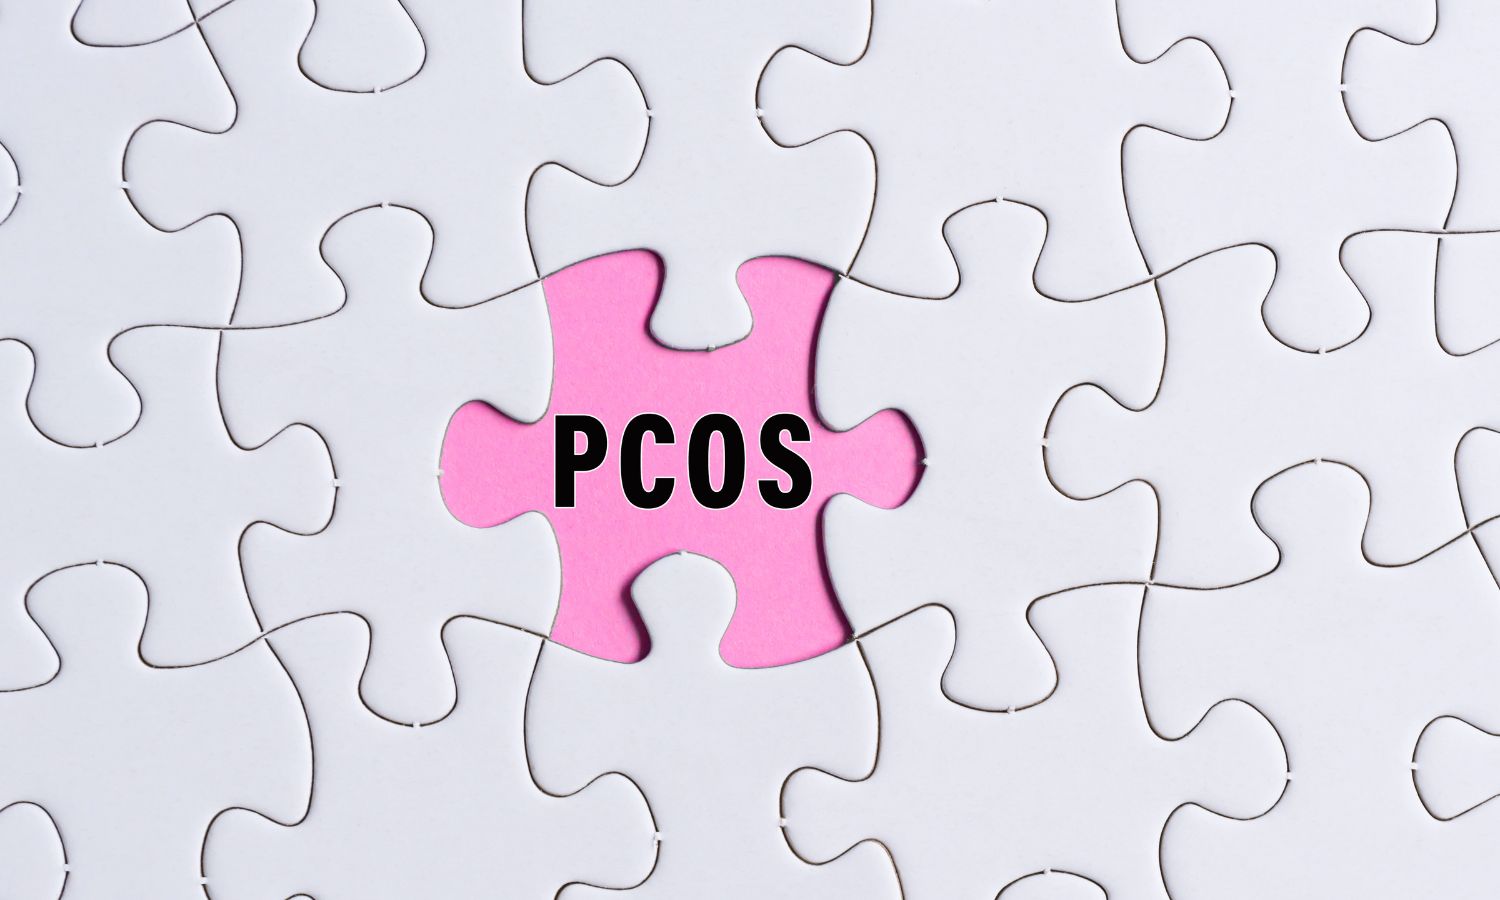 המדריך האולטימטיבי לזיהוי תסמינים של תסמונת השחלות הפוליציסטיות PCOS